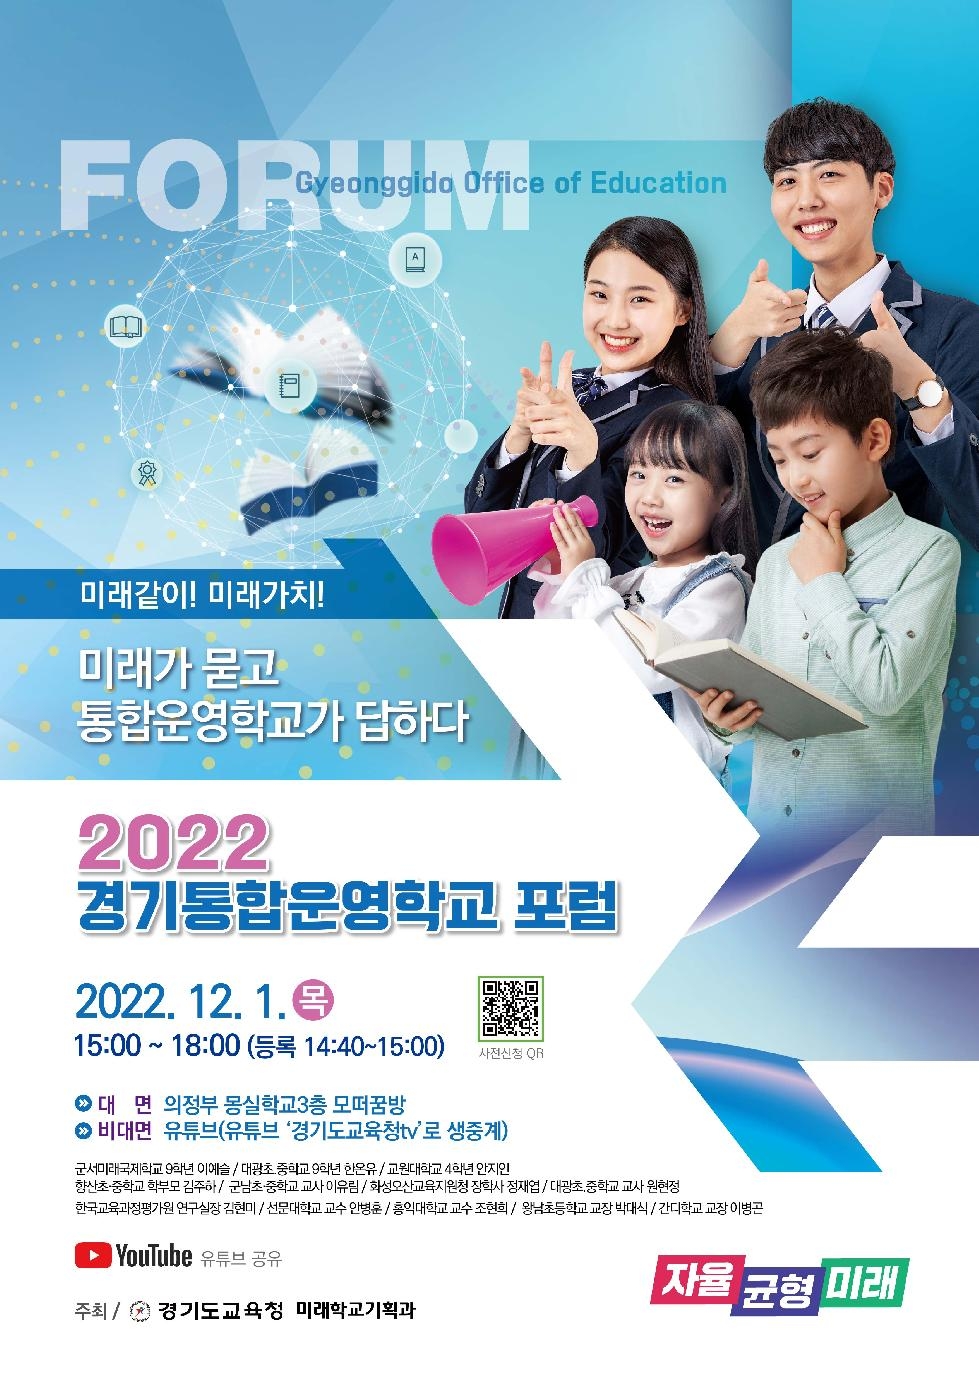 경기도교육청, 2022 경기통합운영학교 포럼 열어